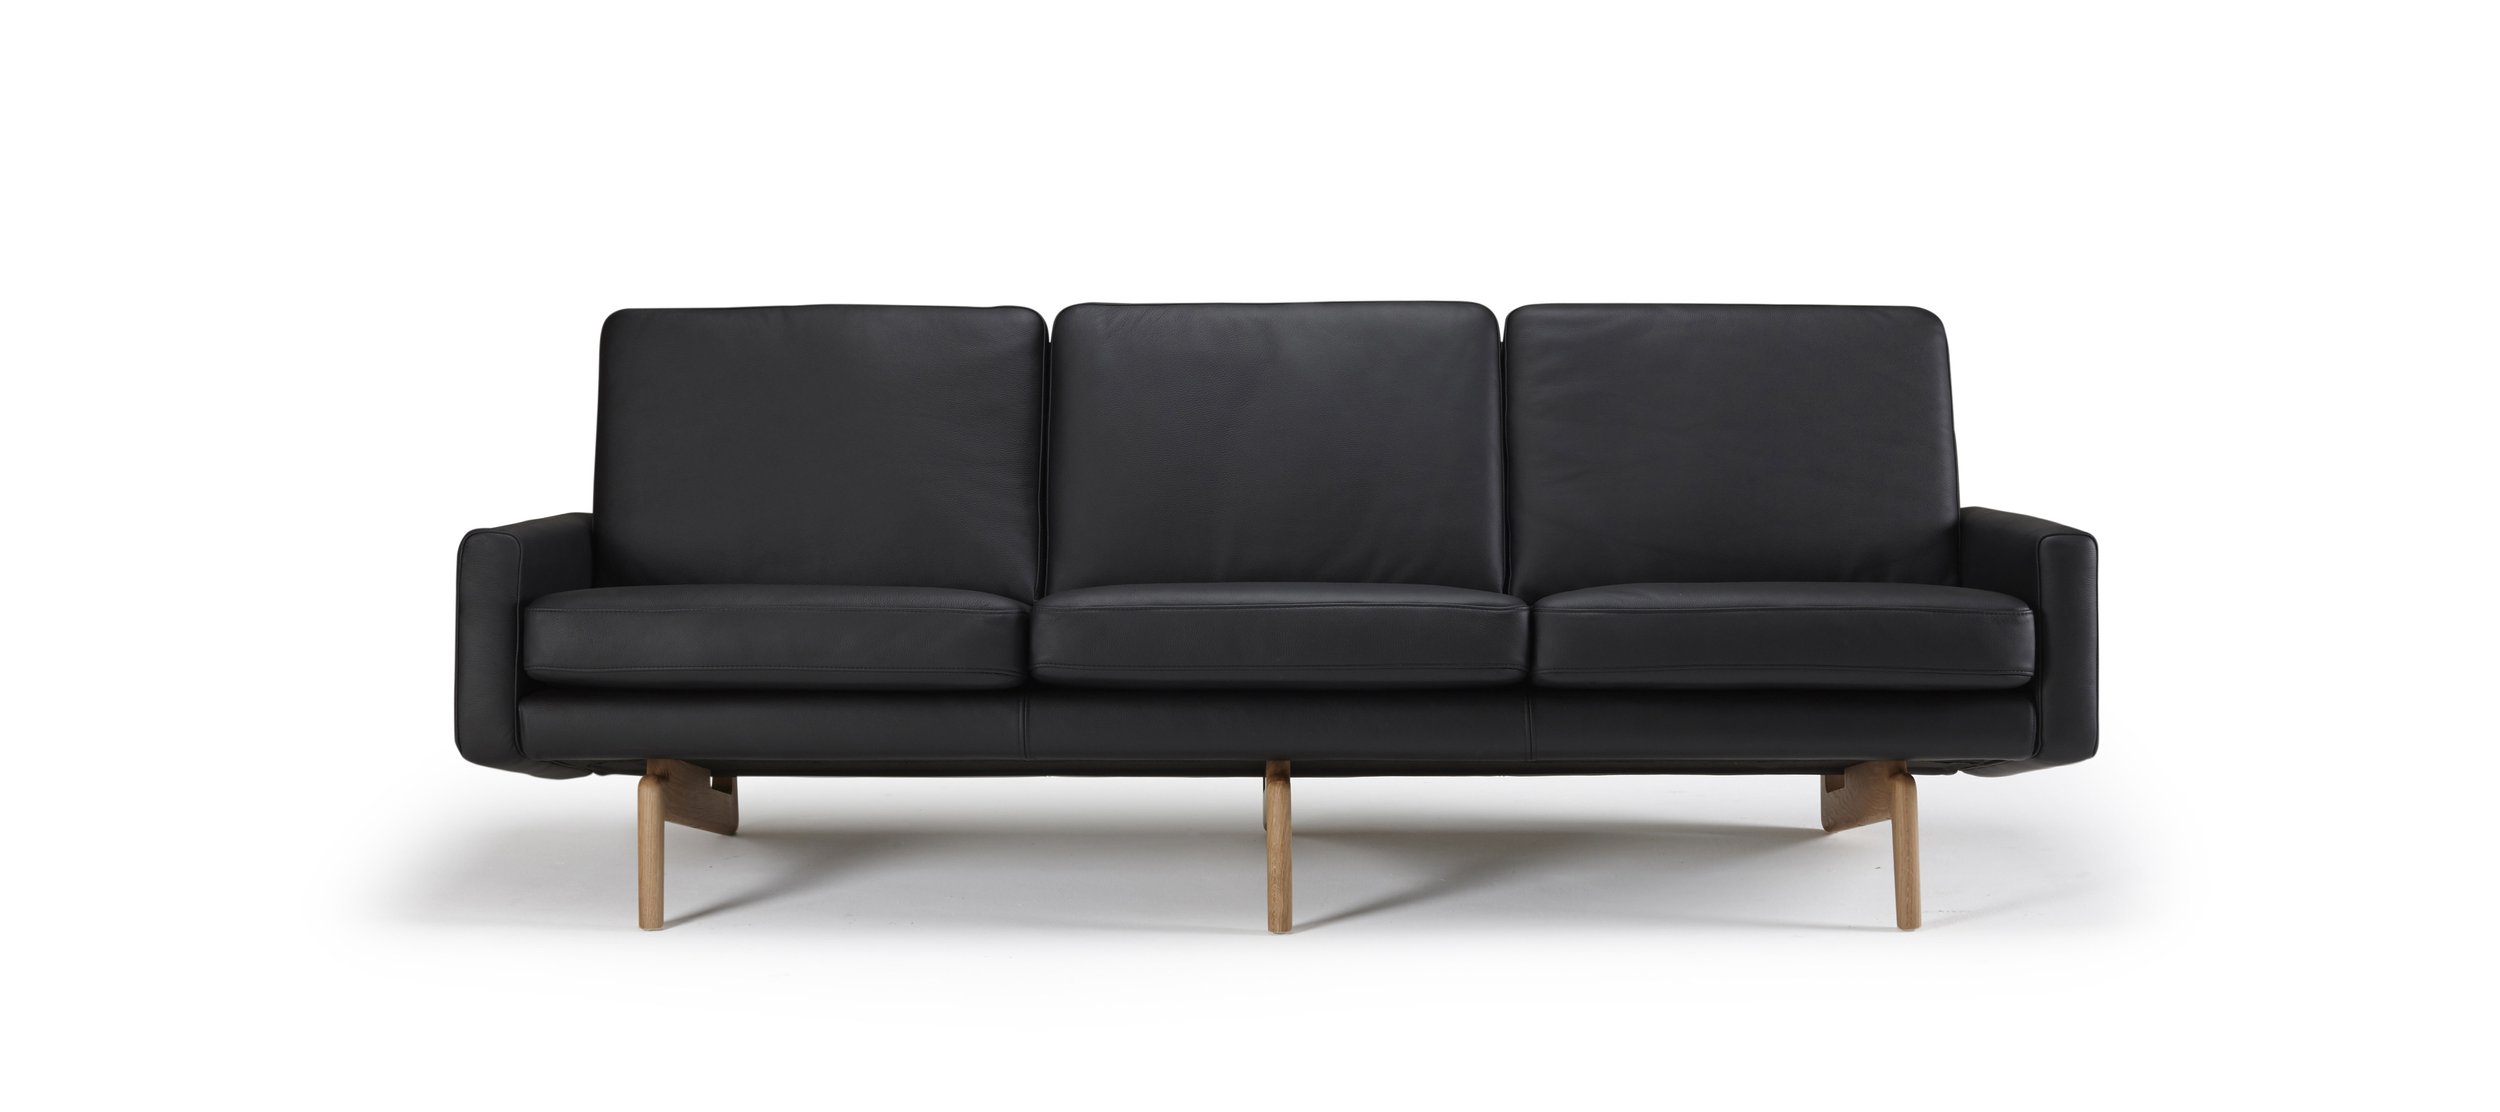 K200-sofa-3-seater-arms-800-black-p1.jpg